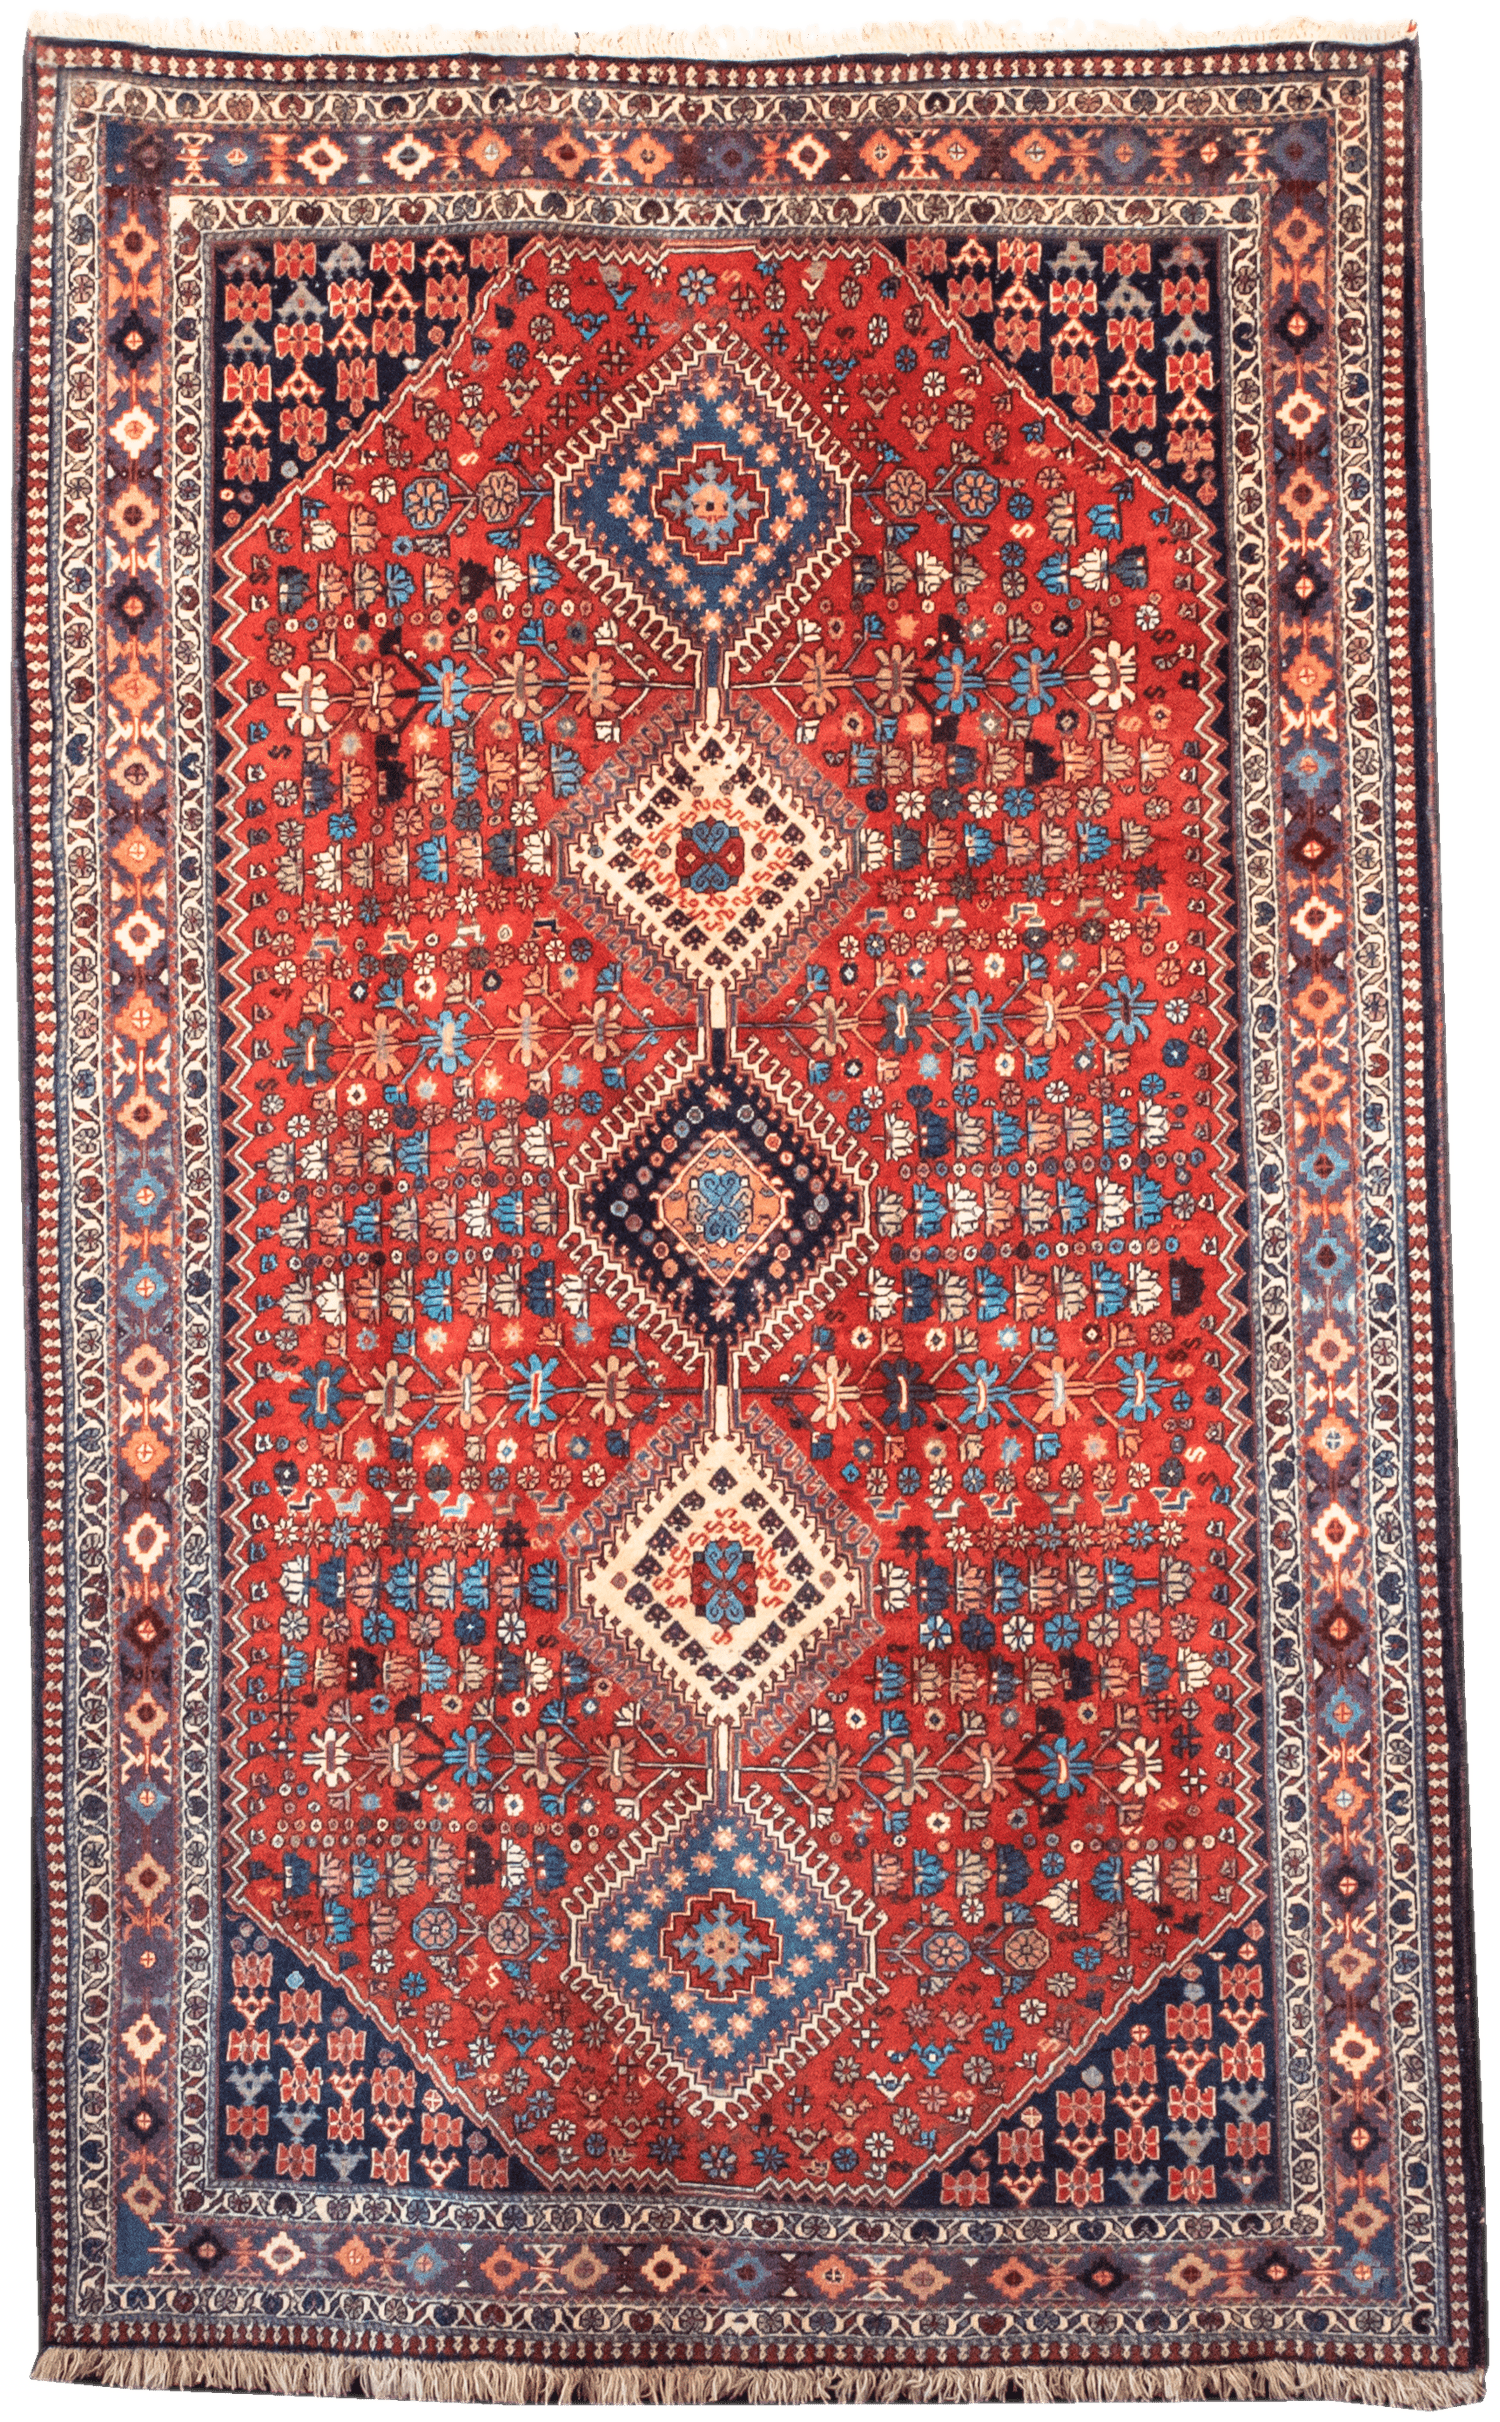 Hanging Handmade Persian Yalameh Rug